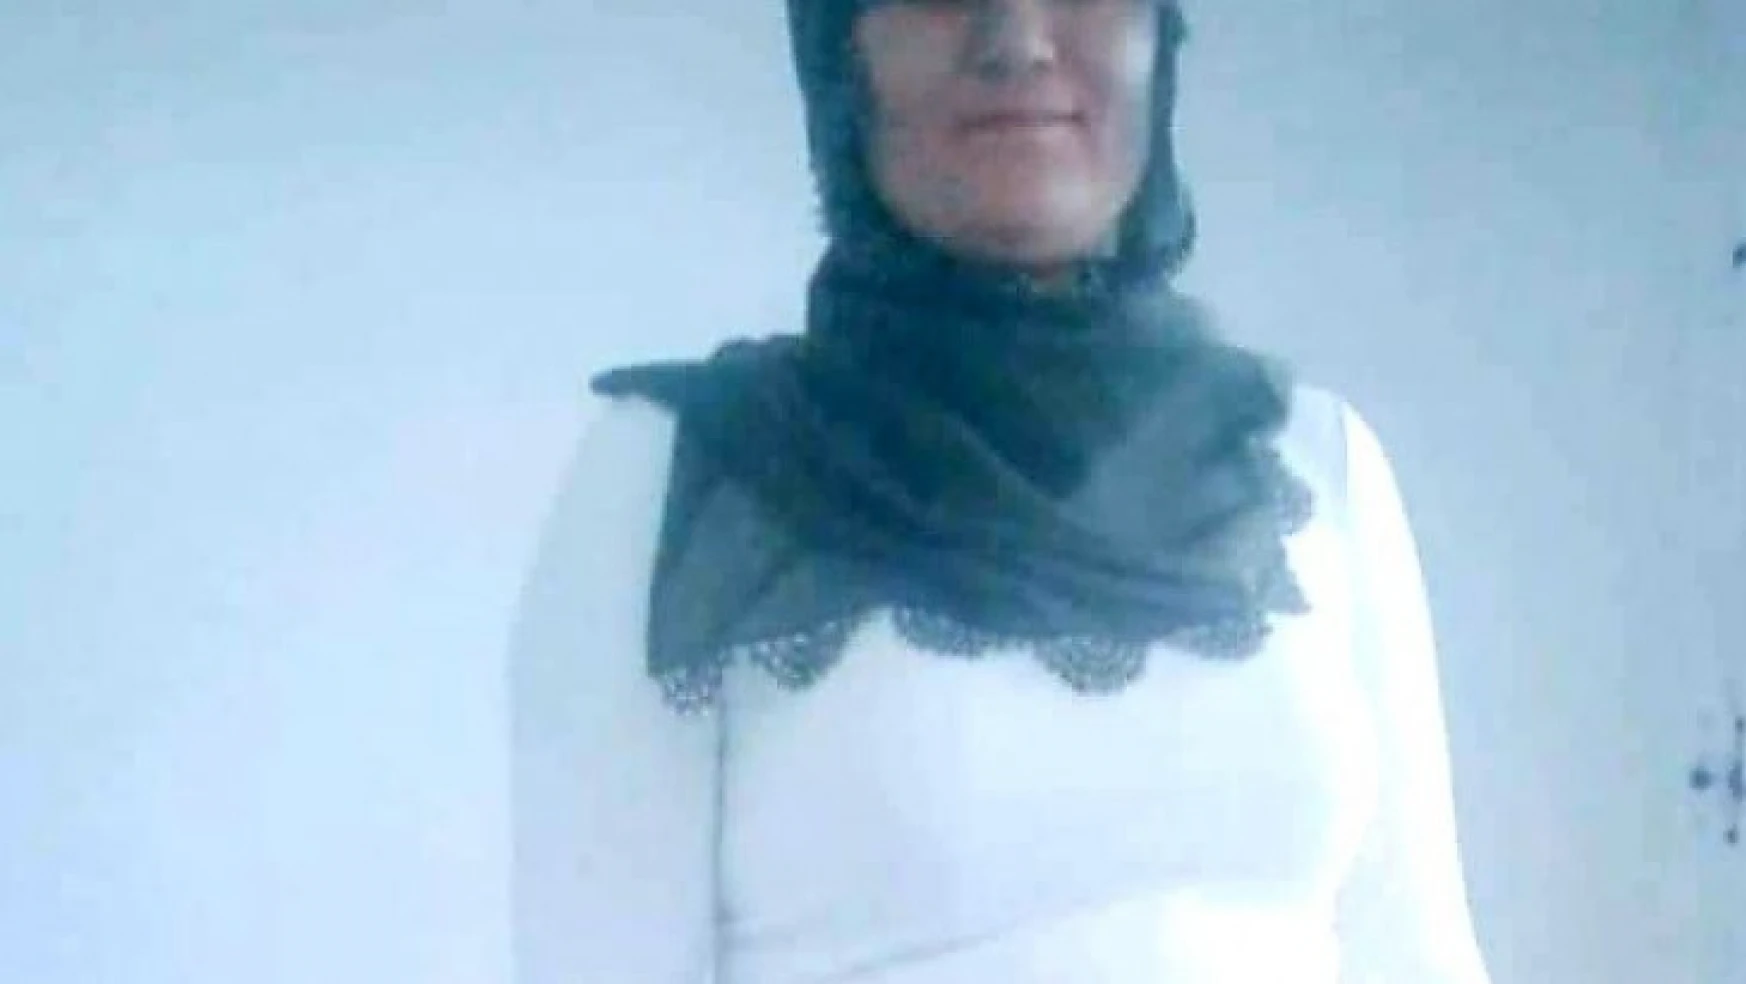 Elazığ'da kaybolan kadının cesedi, poşete sarılı olarak bulundu